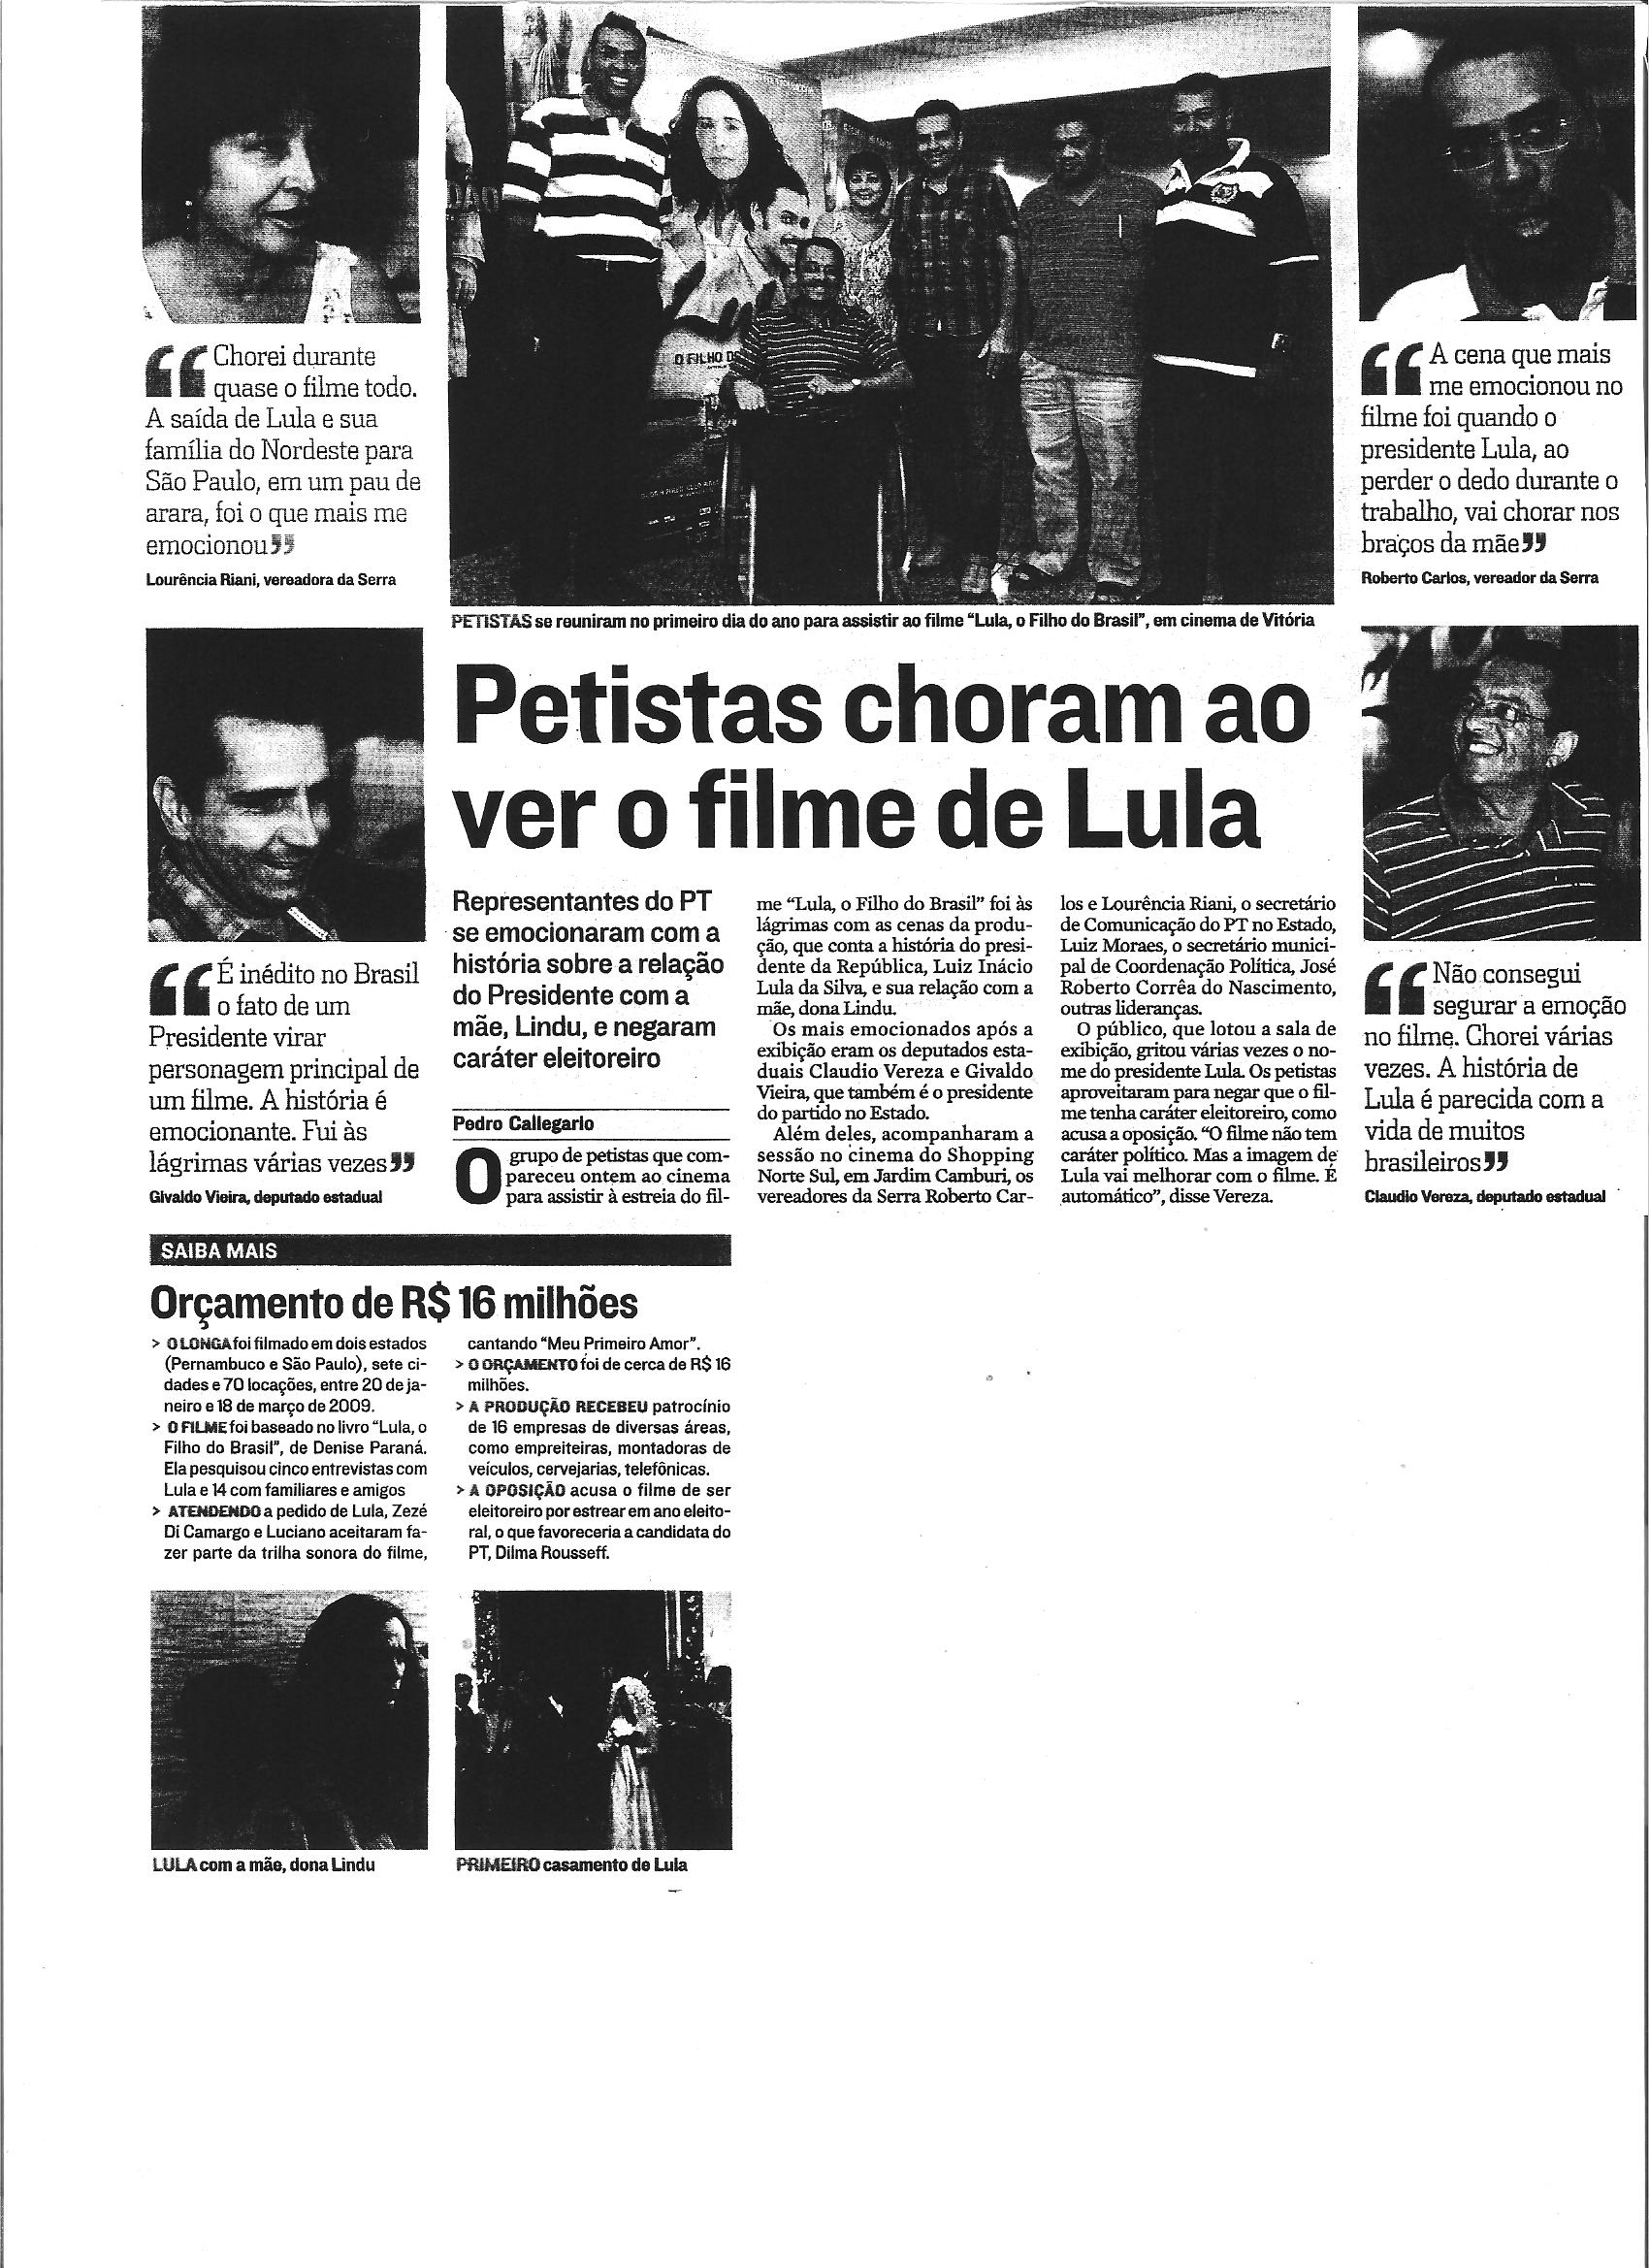 Petistas choram ao ver o filme de Lula